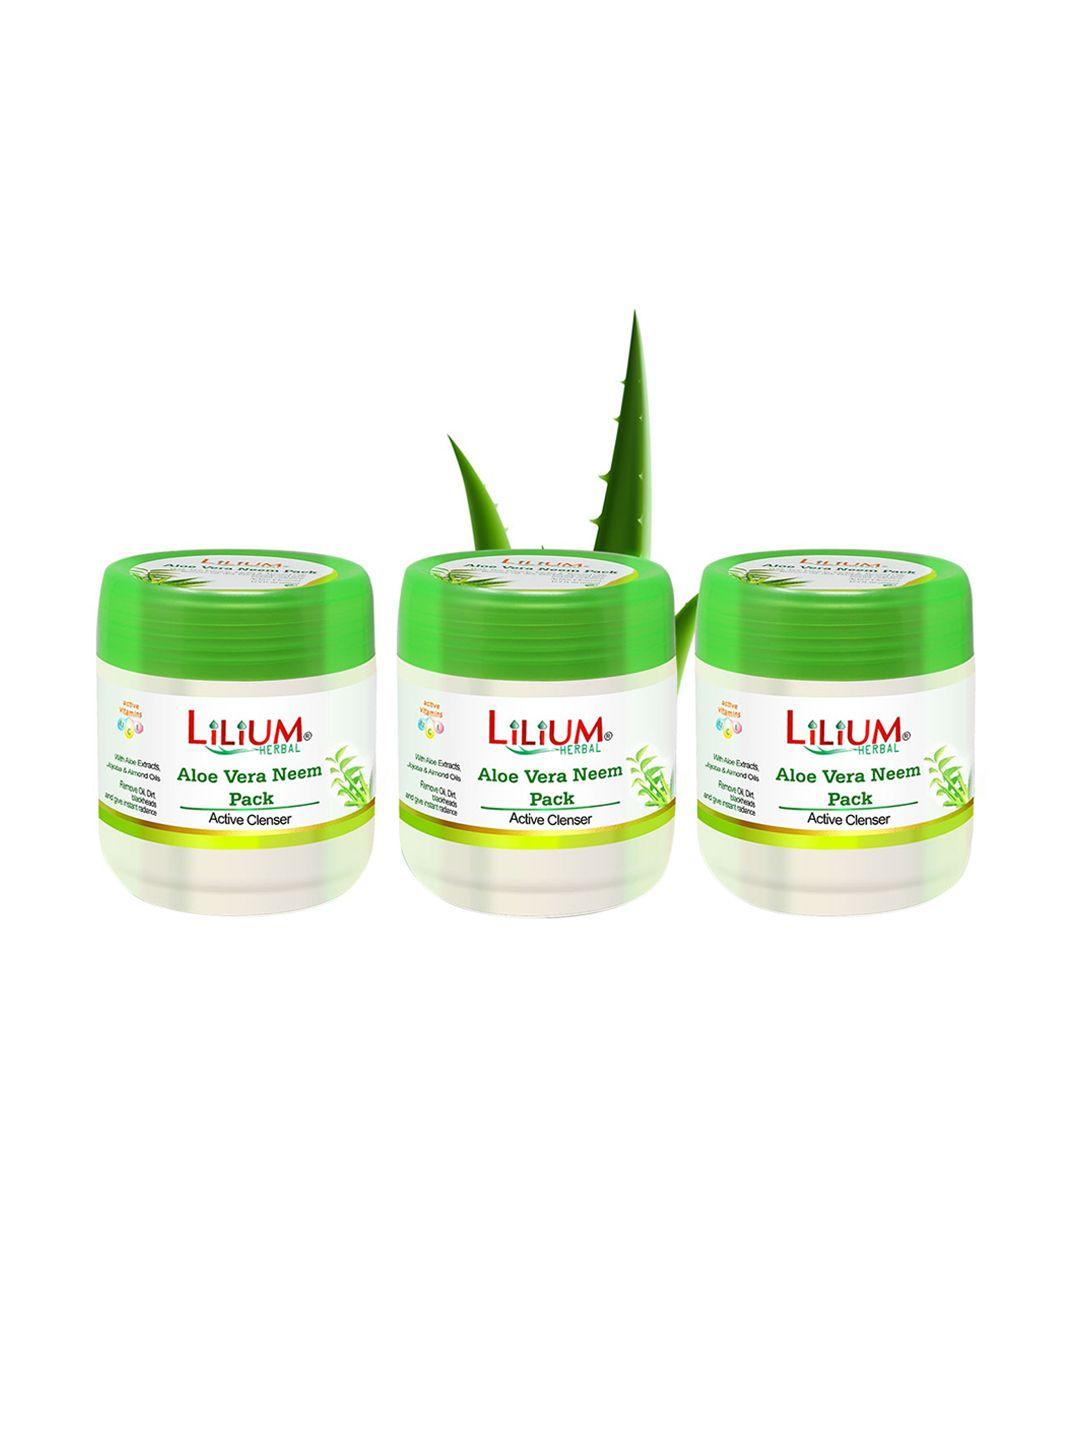 lilium set of 3 herbal aloe vera face pack